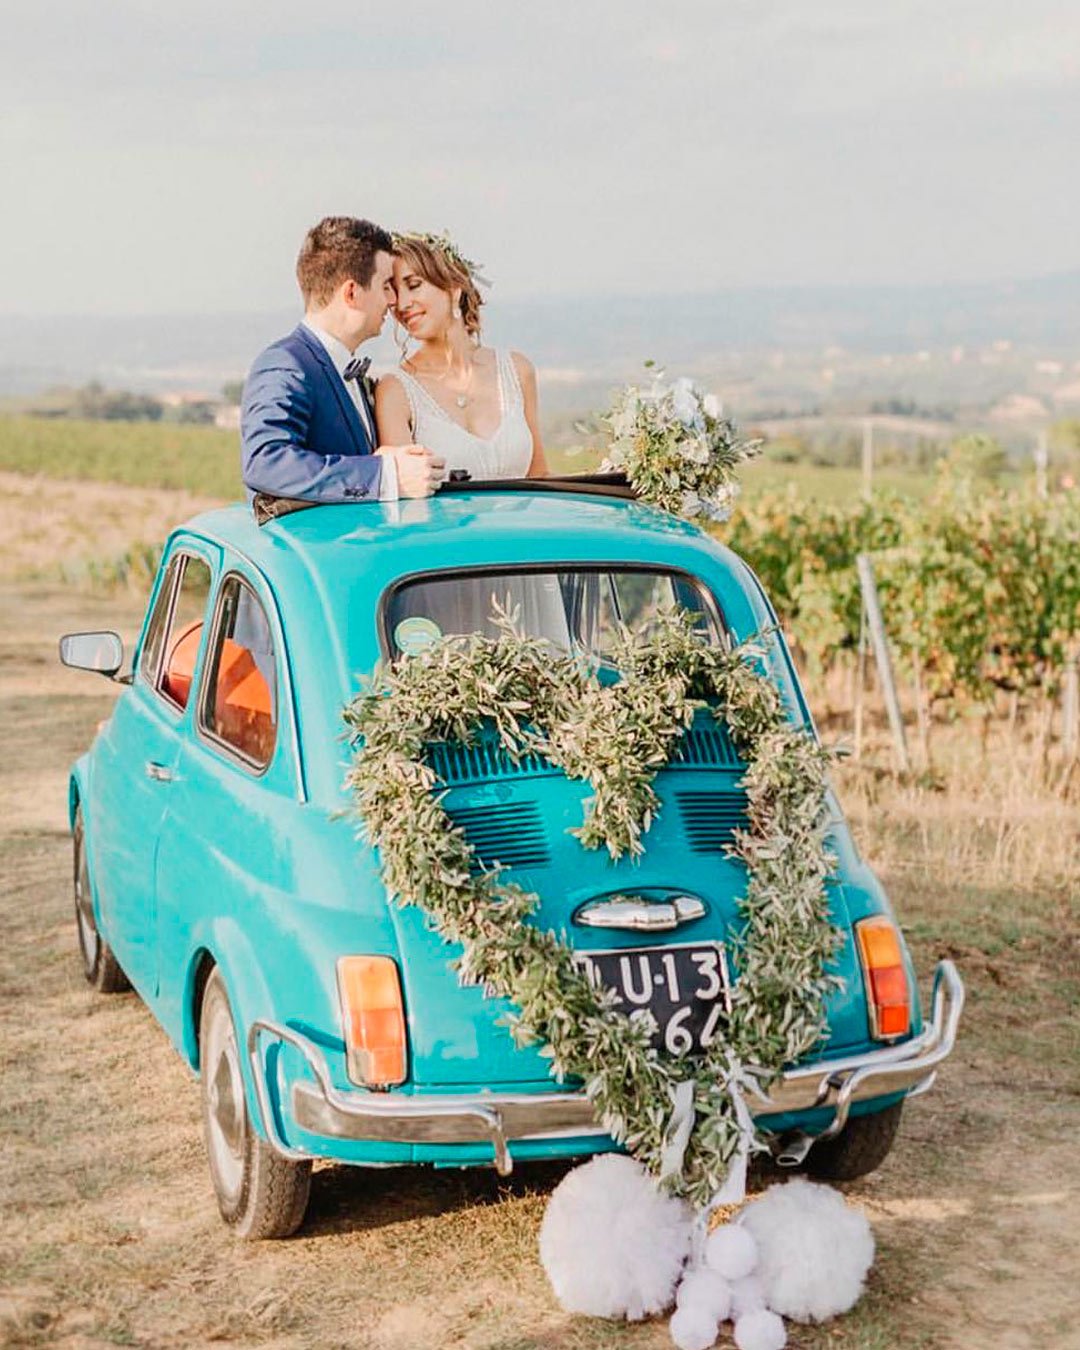 wedding car decor ideas greenery bows